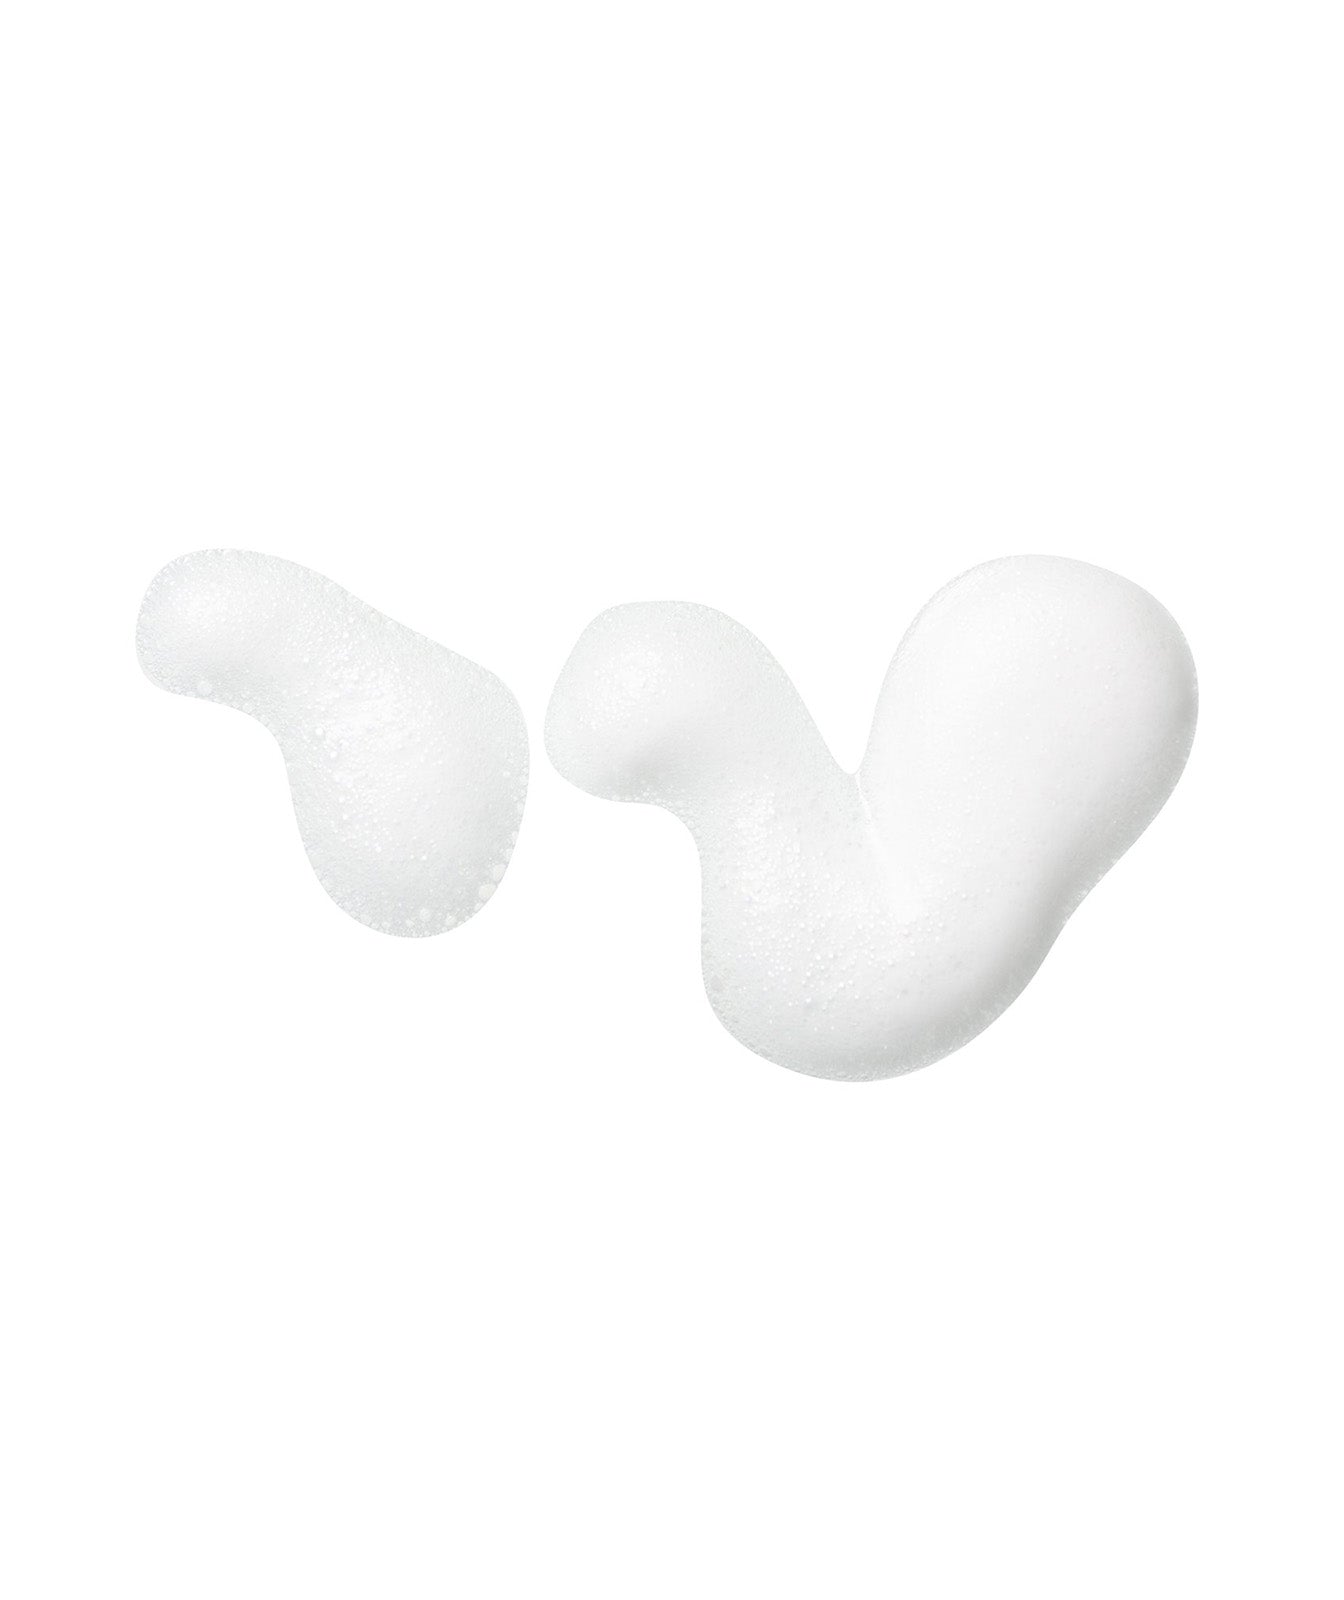 Imagen secundaria de la espuma fuera de su envase en concreto en un fondo blanco elegante que hace destacar sus burbujas.